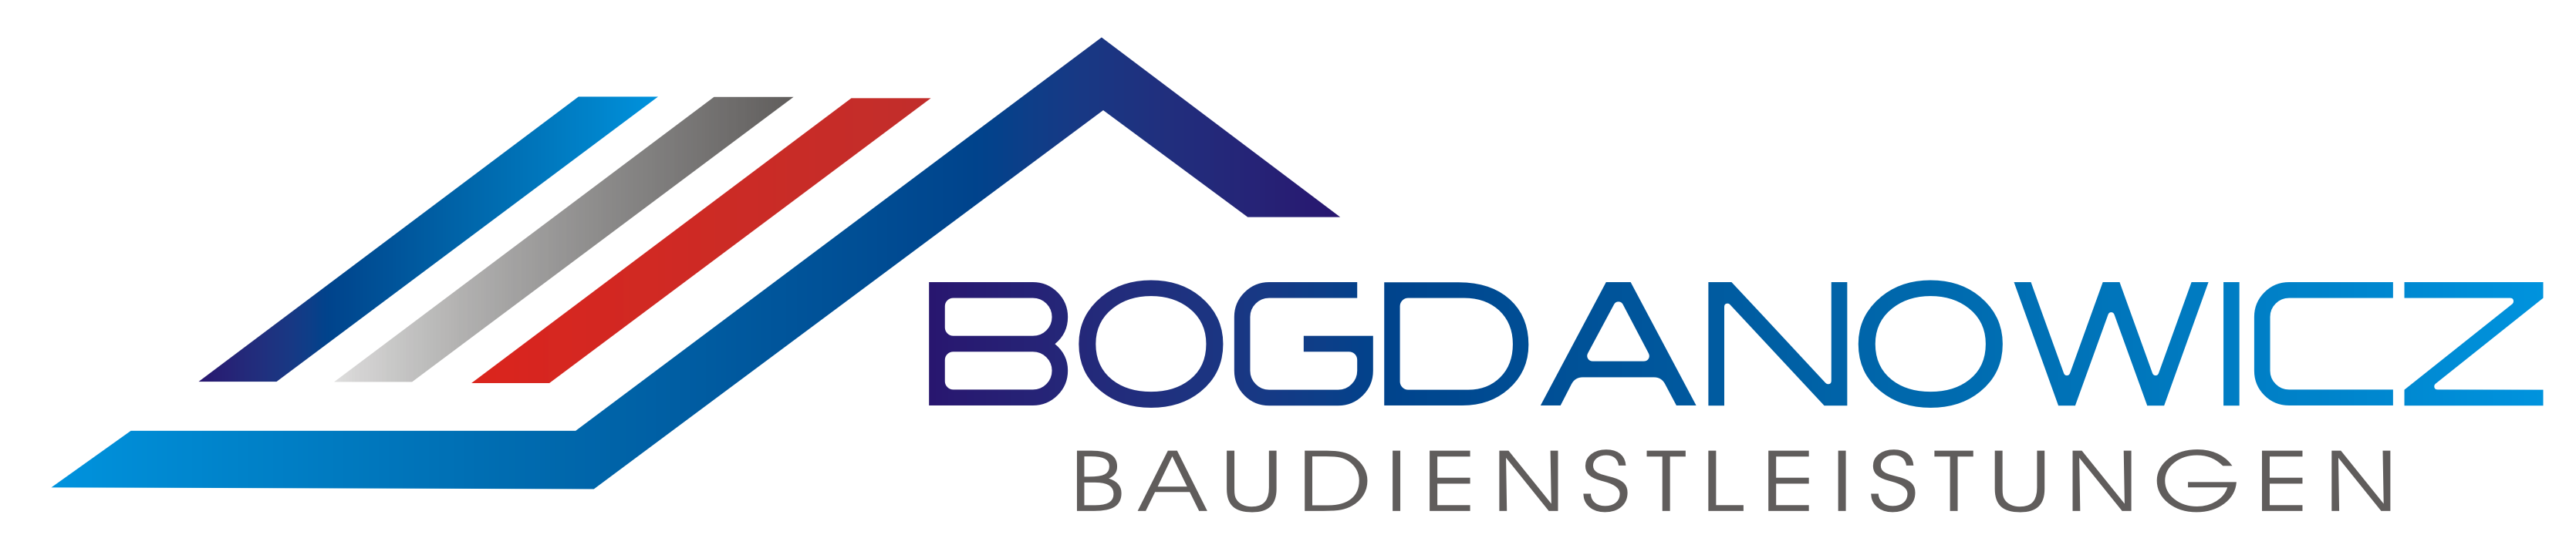 Bogbau- Baudienstleistungen